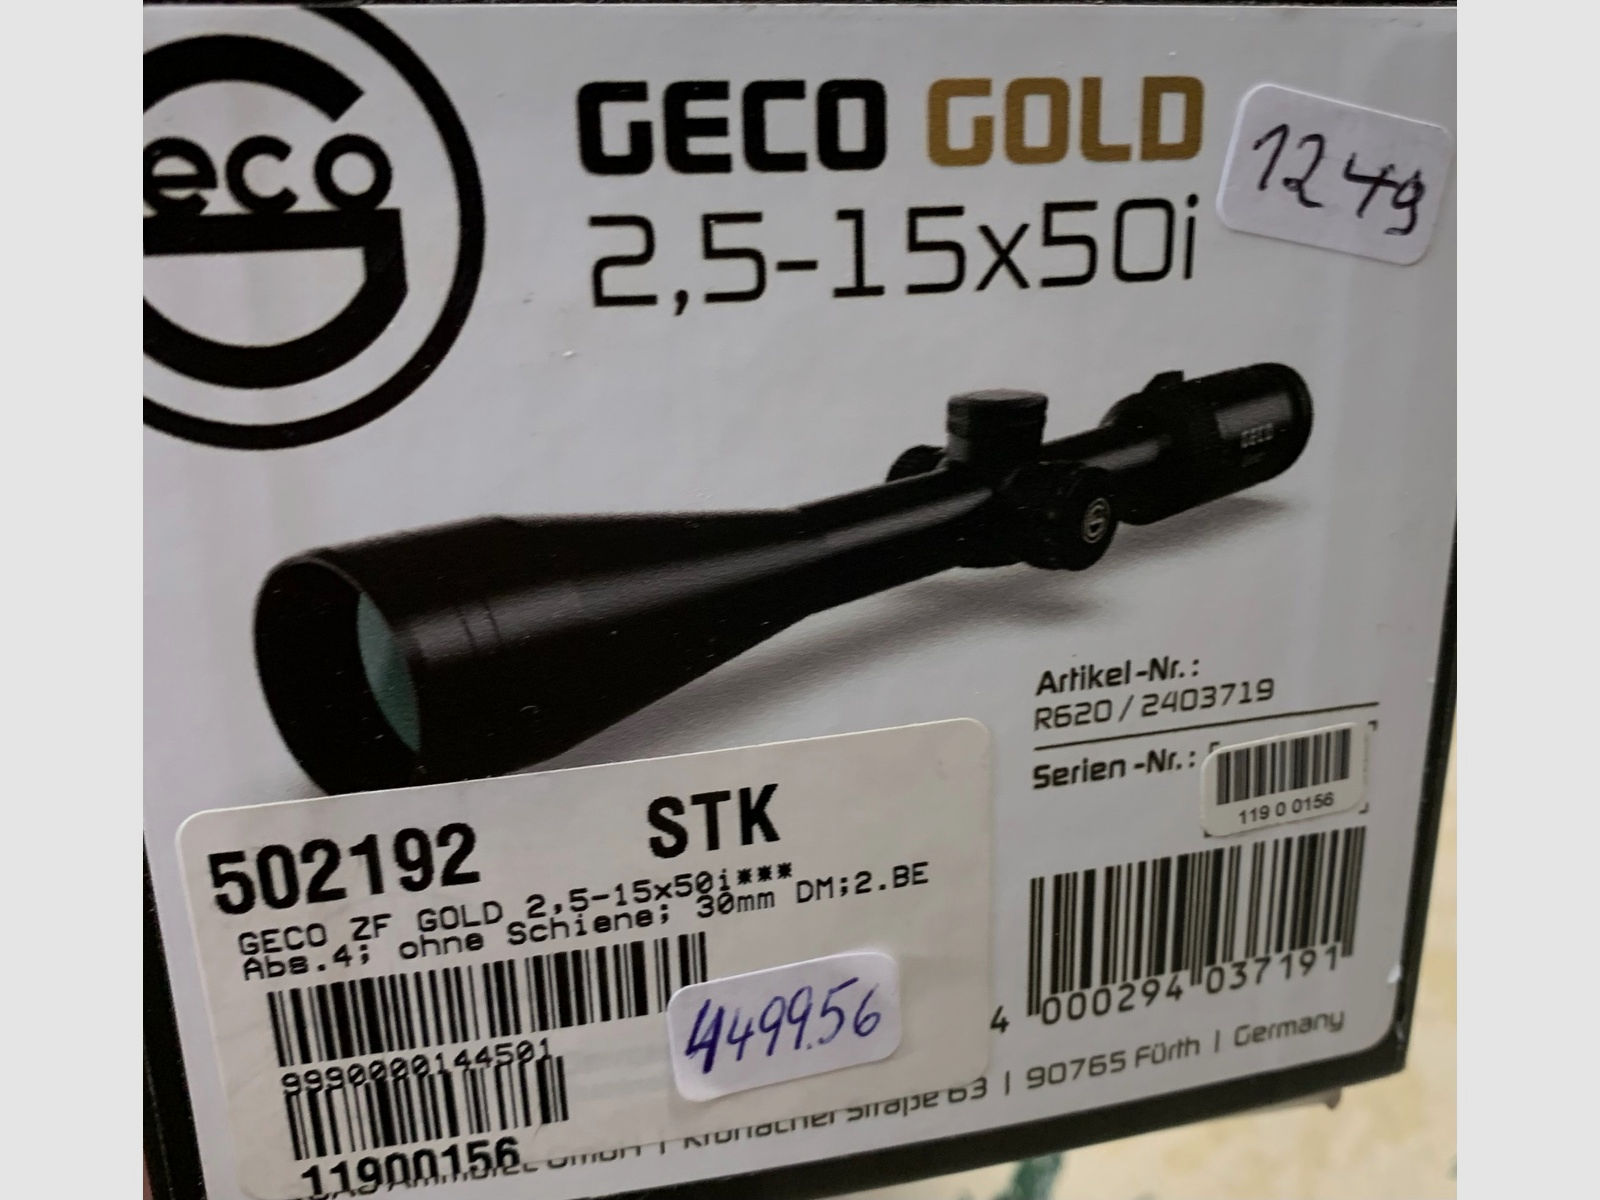 Geco Gold 2,5 - 15 x 50i